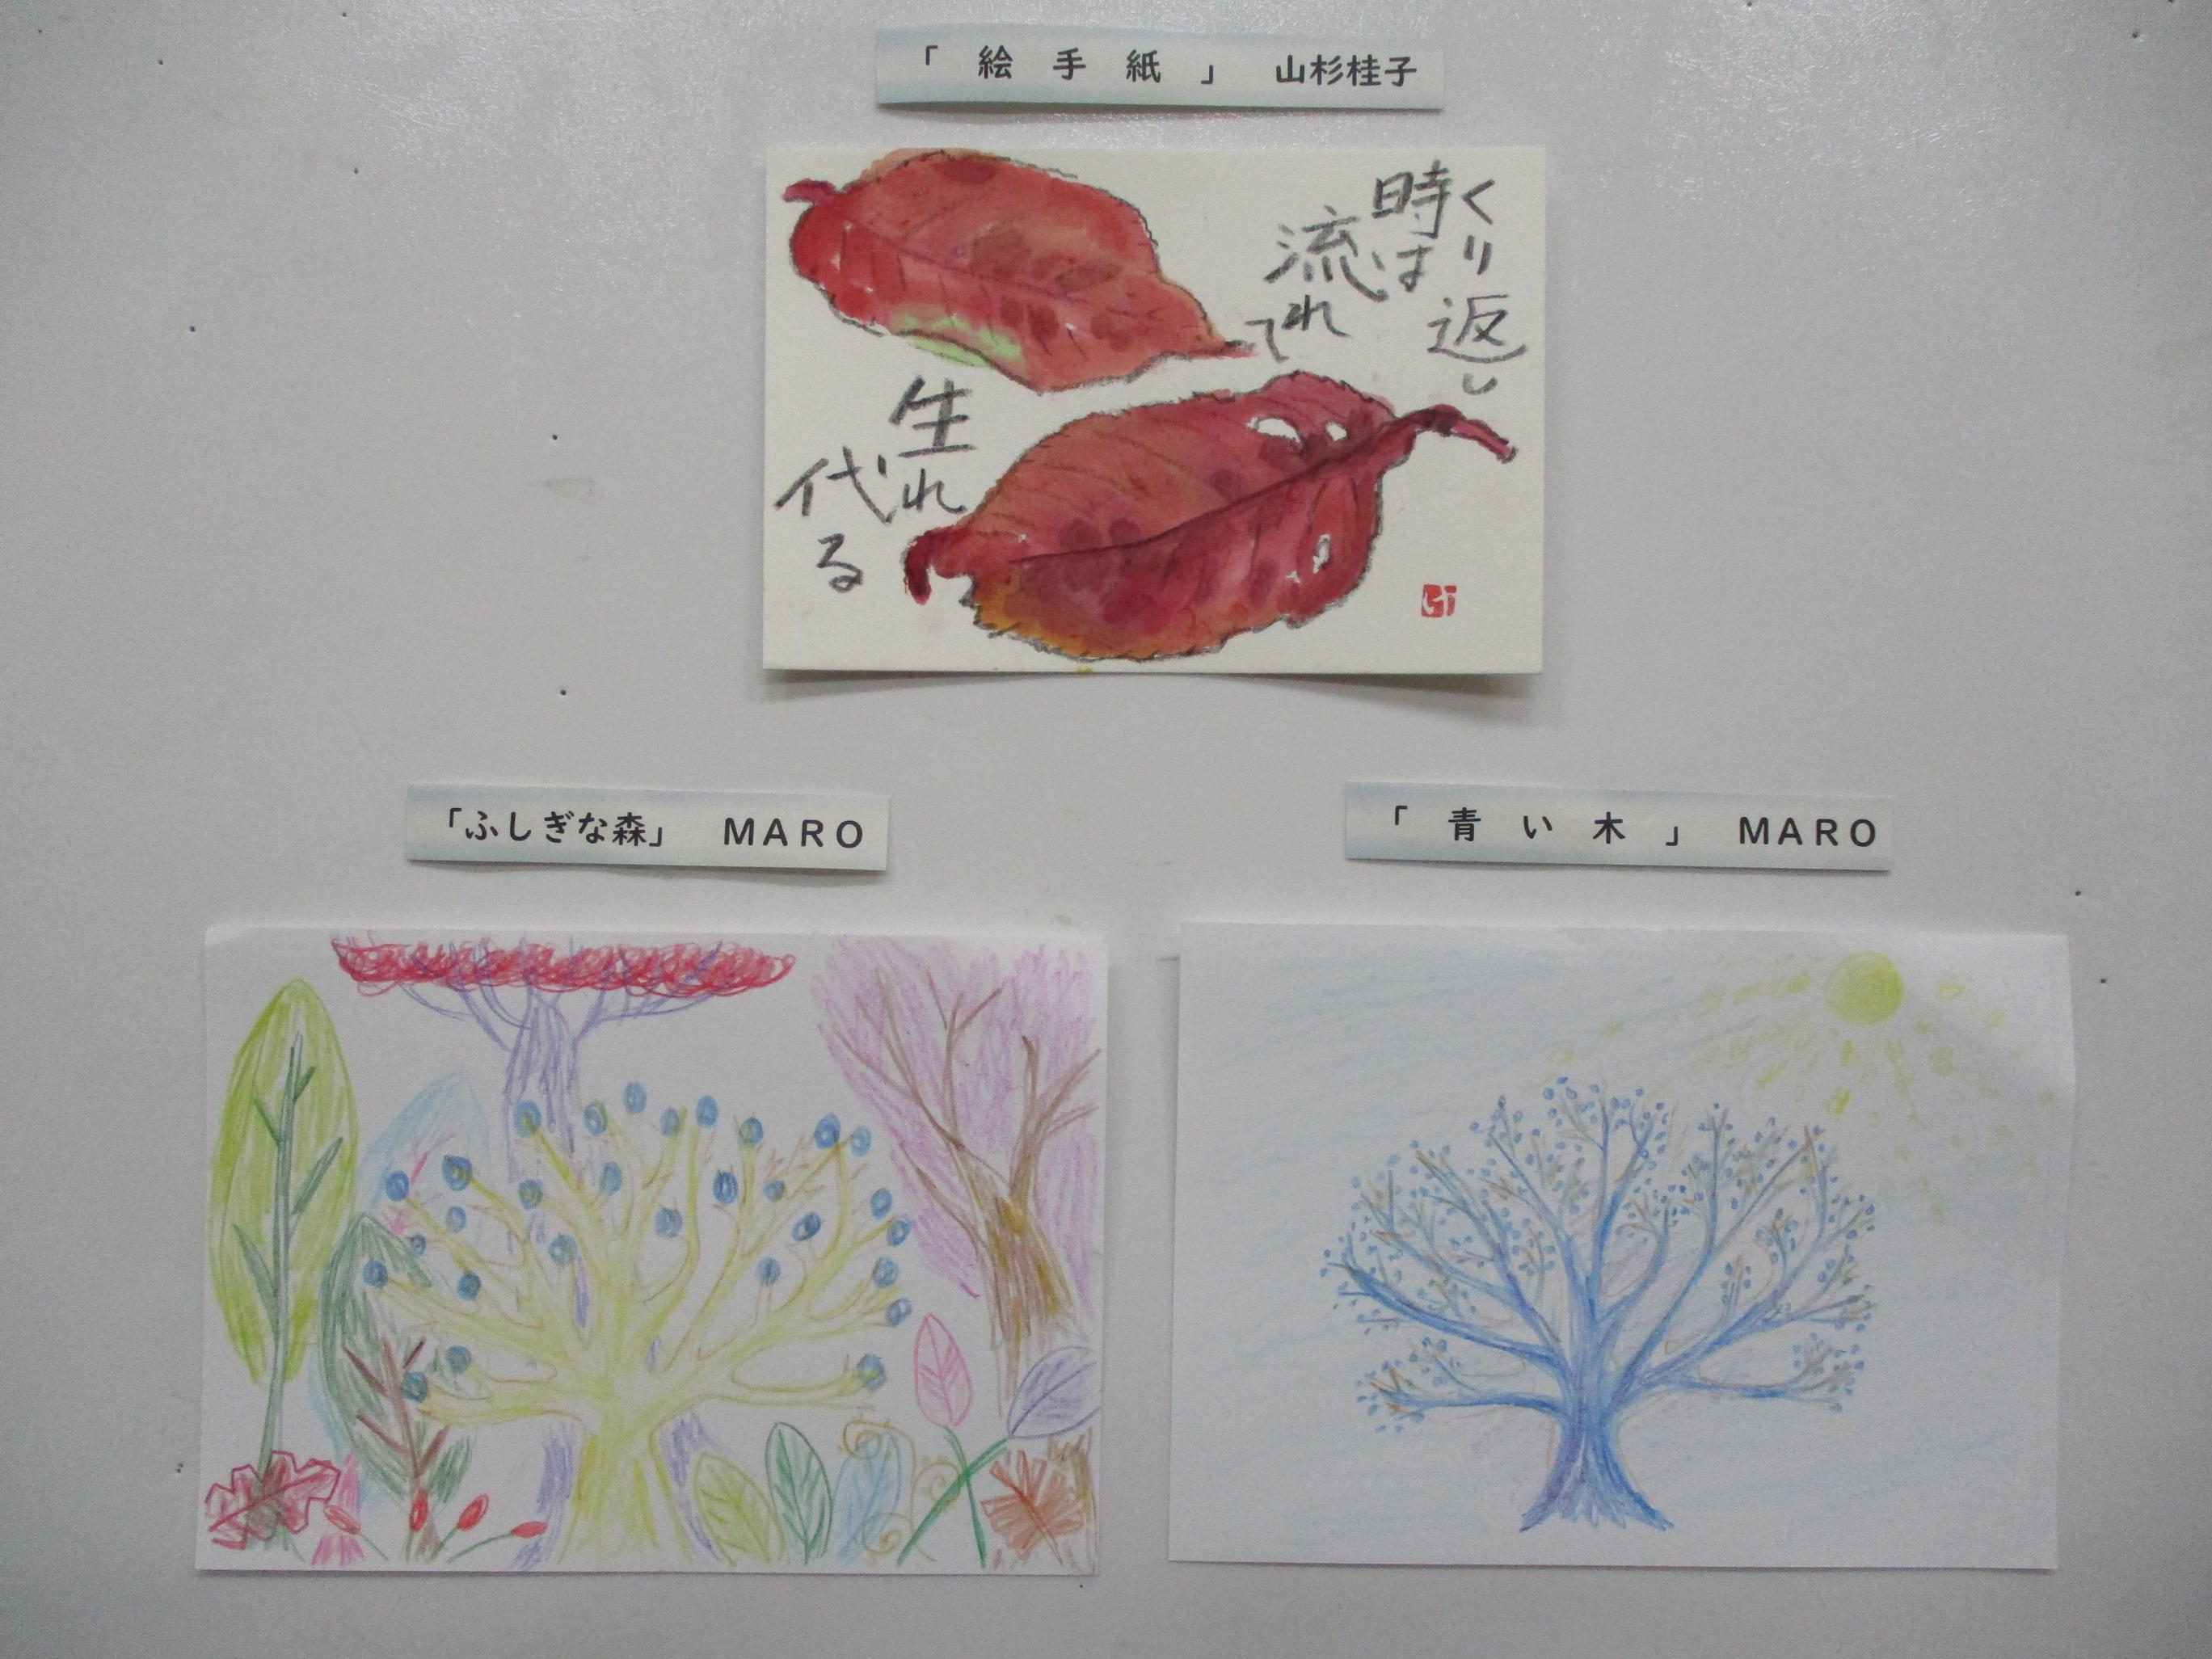 にじいいろアート作品の写真「絵手紙／山杉桂子様」「ふしぎな森／MARO様」「青い木／MARO様」